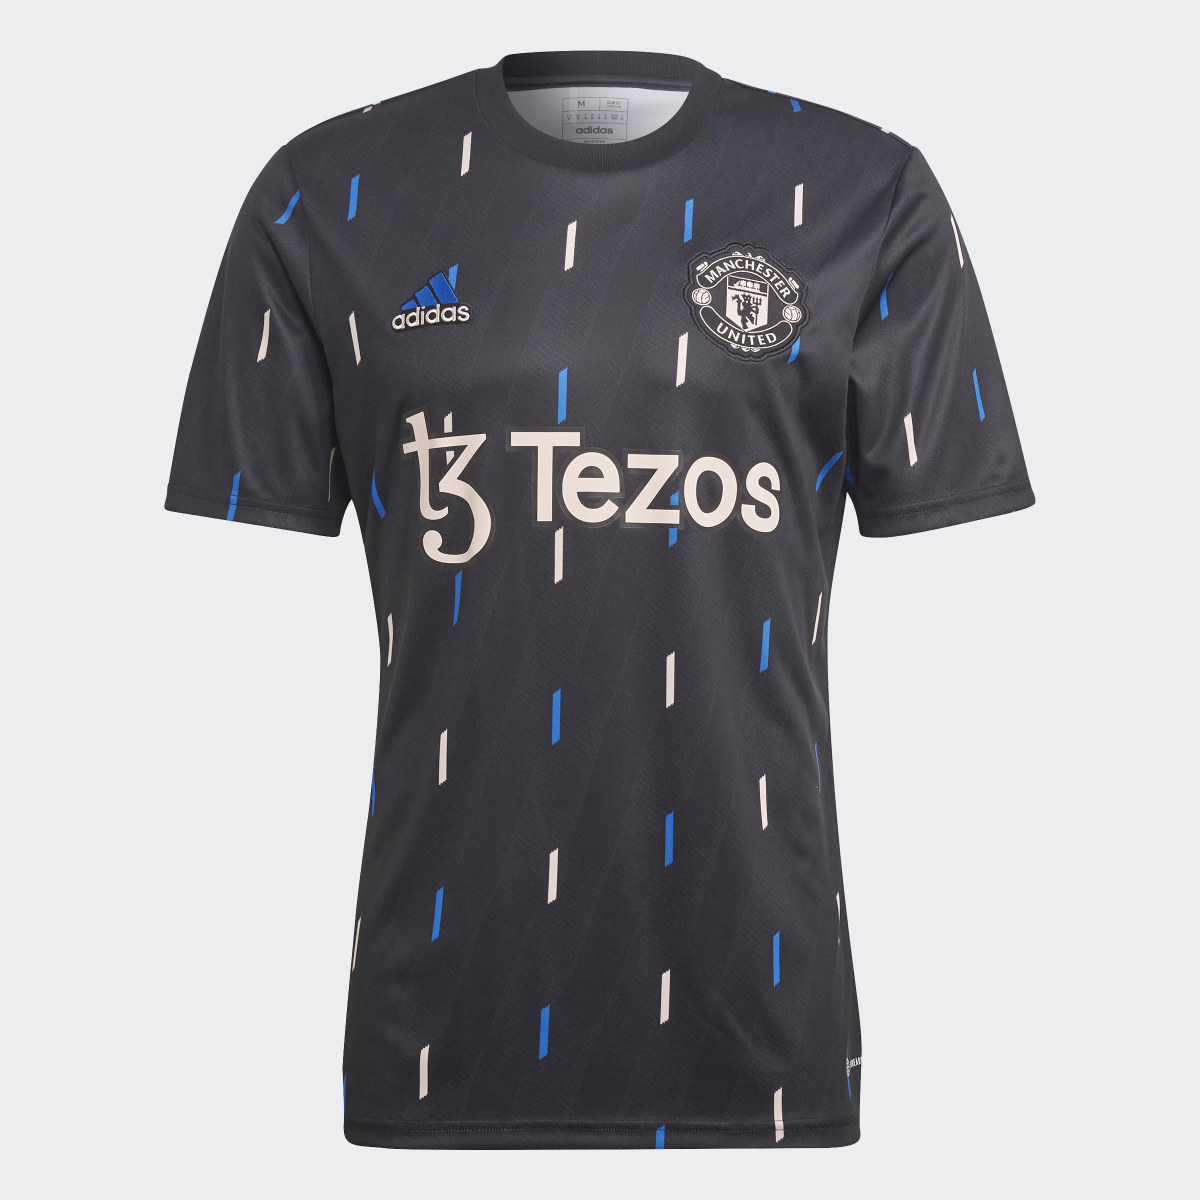 Adidas Camisola de Aquecimento do Manchester United. 5